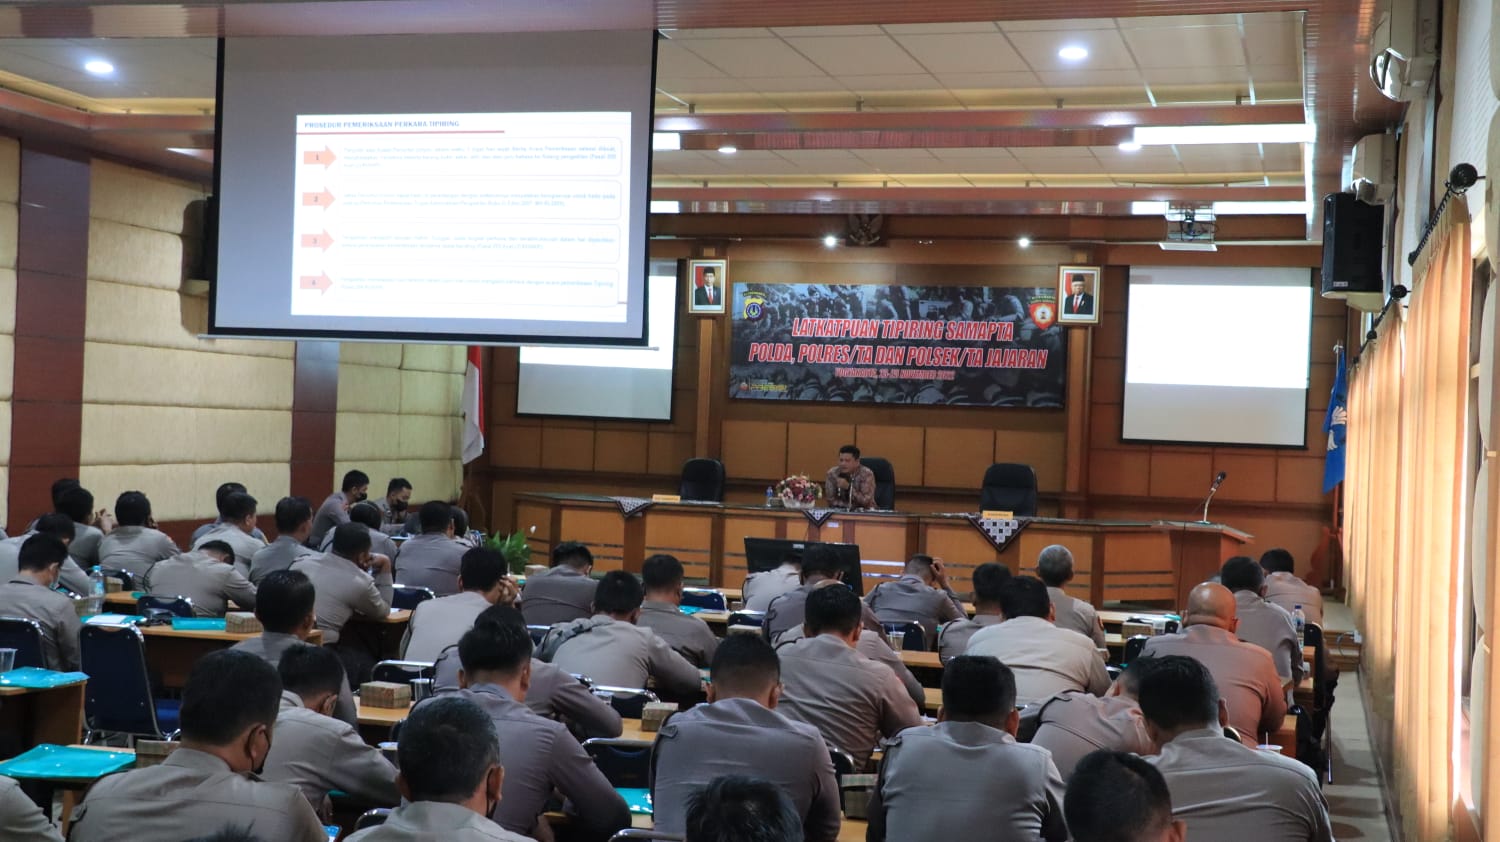 Hakim Pengadilan Negeri Yogyakarta Mengikuti Kegiatan Pelatihan Peningkatan Kemampuan Tipiring Bagi Personel Kepolisian 